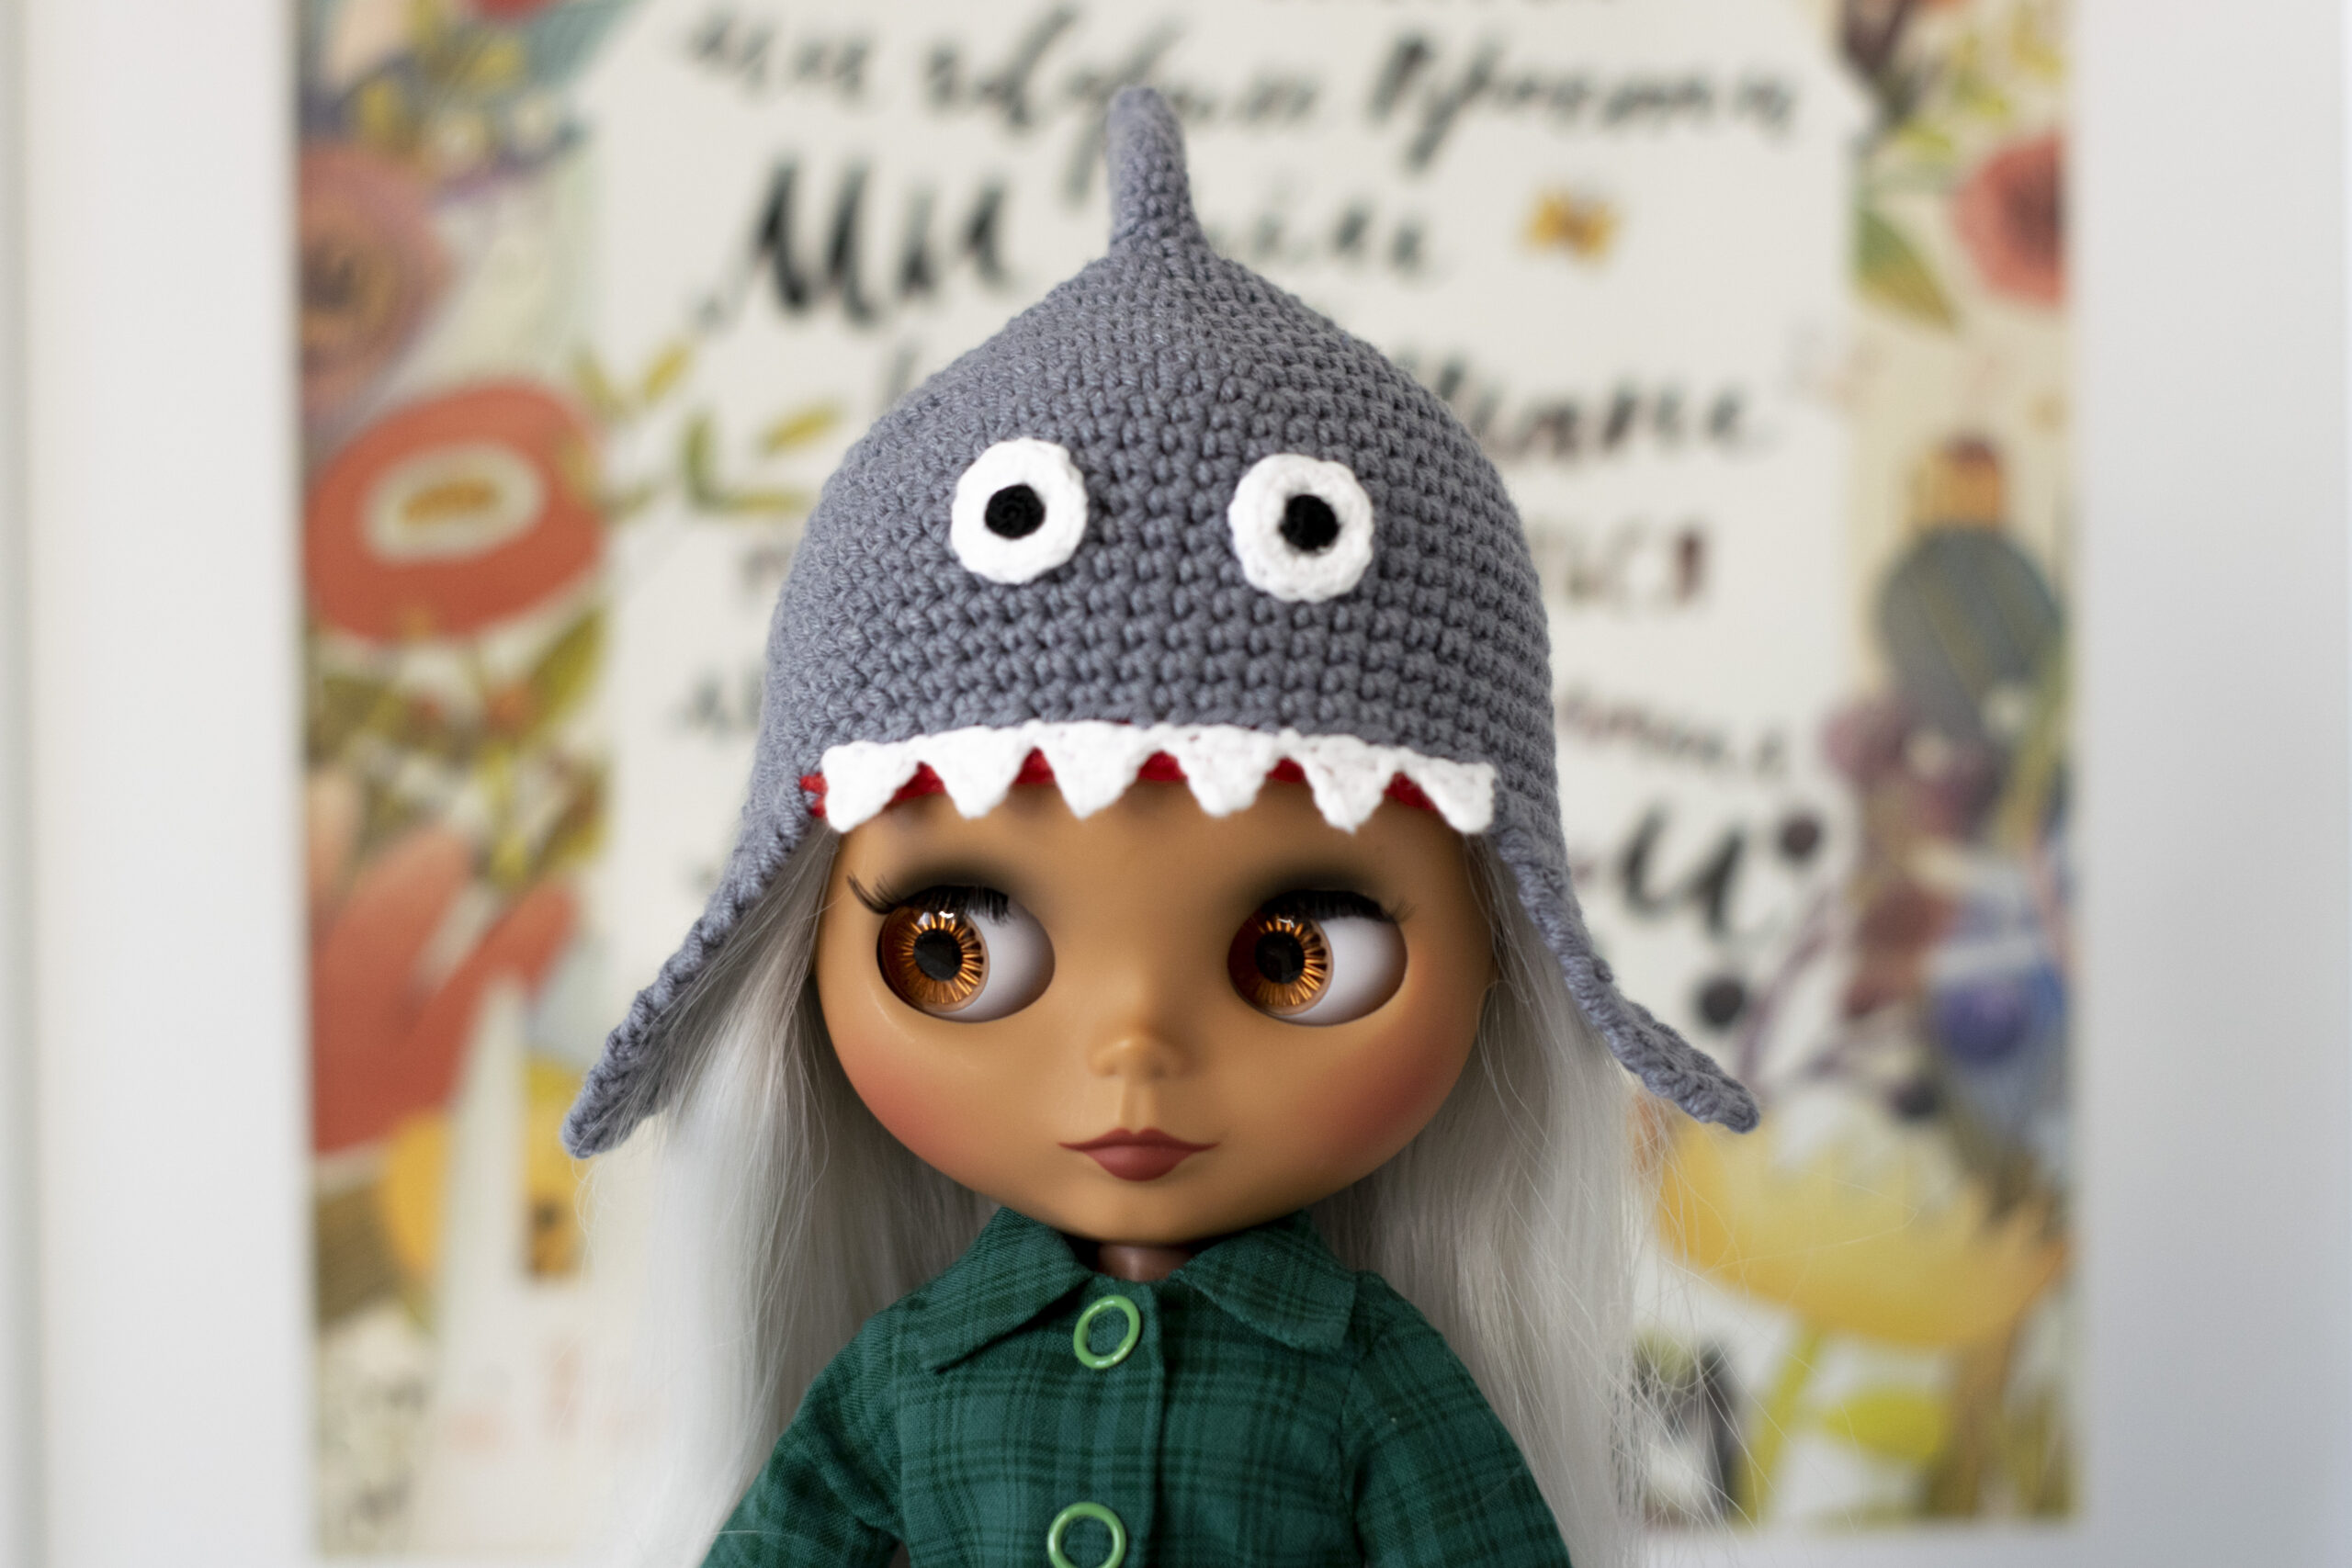 Crochet shark hat helmet for Blythe doll, Pullip, Ice doll